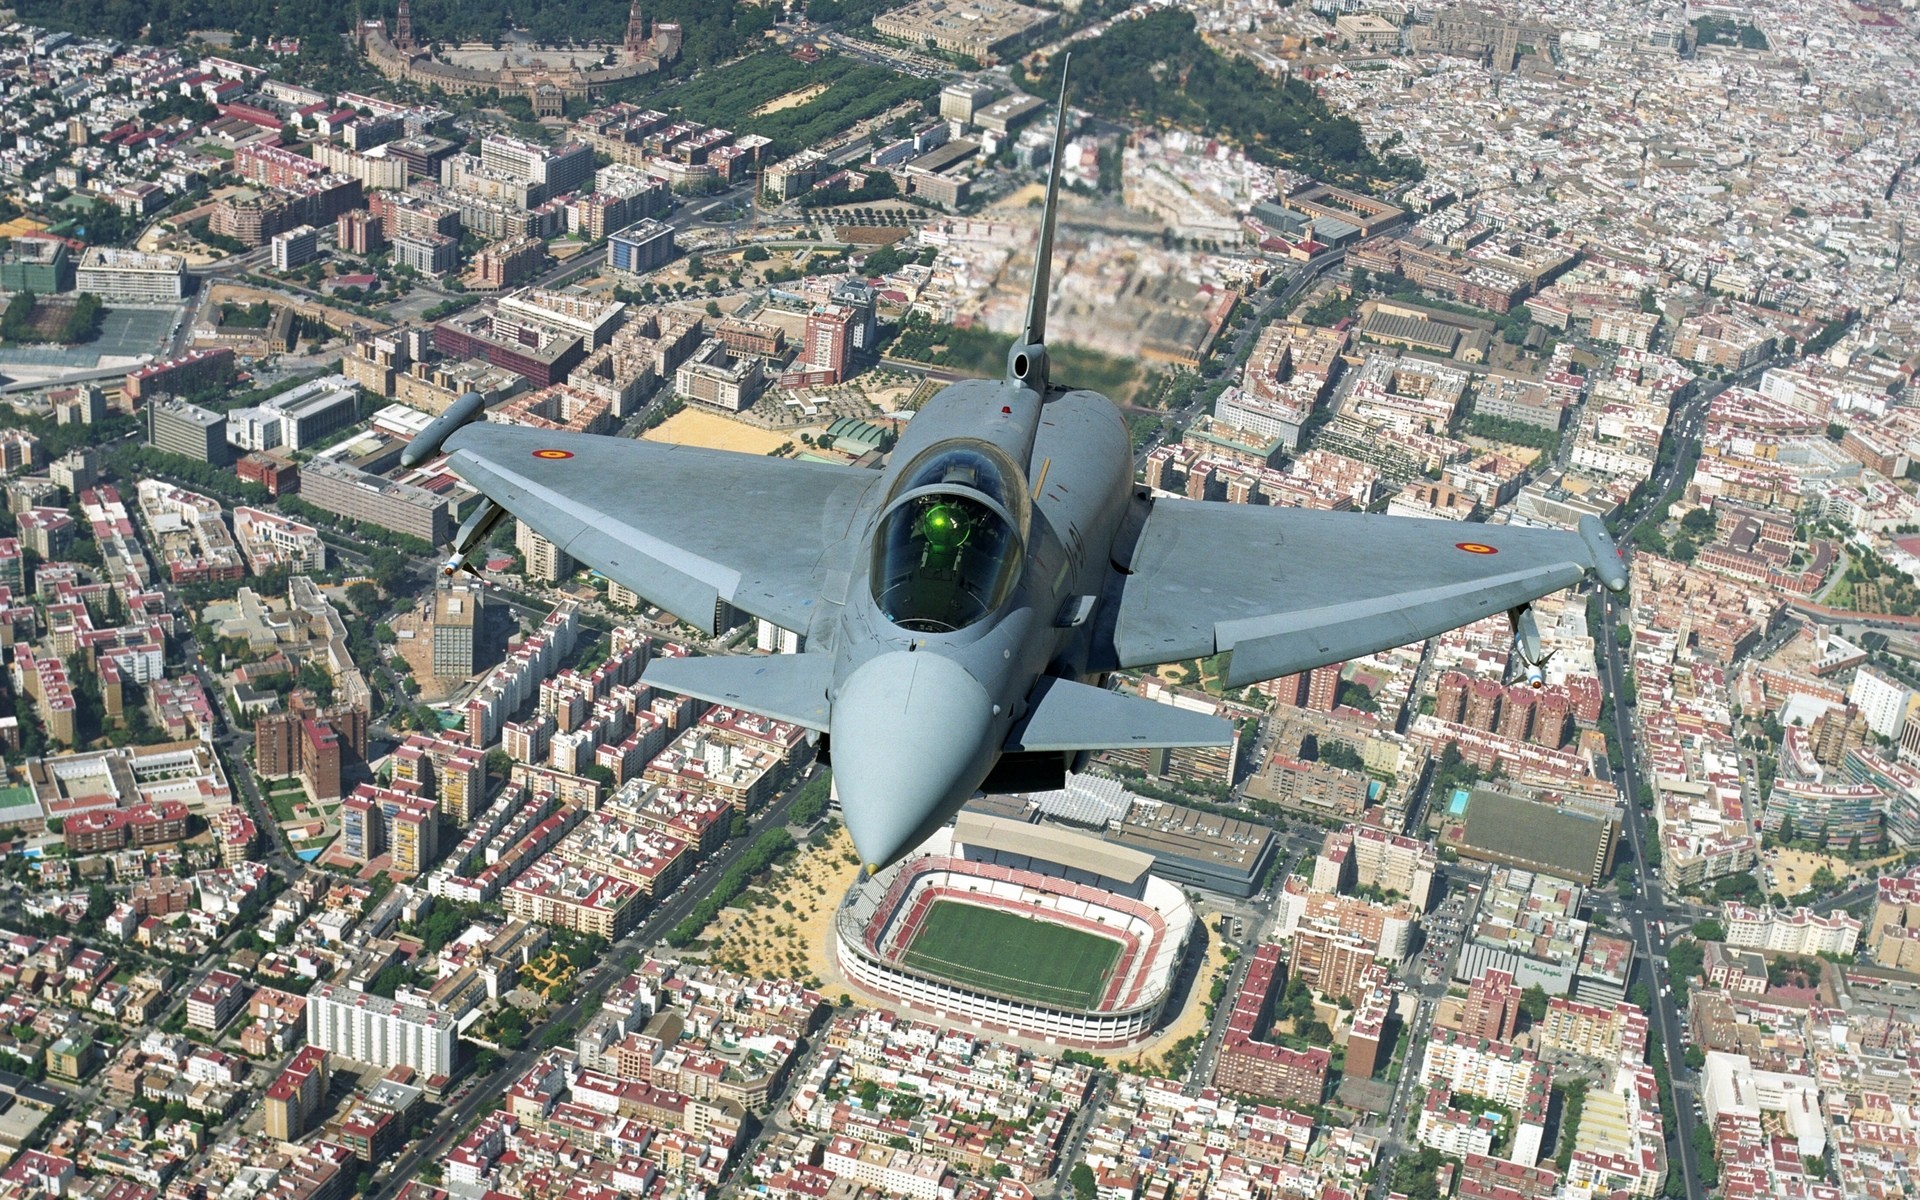 
BAE Systems согласовала с Саудовской Аравией цену на истребители Eurofighter